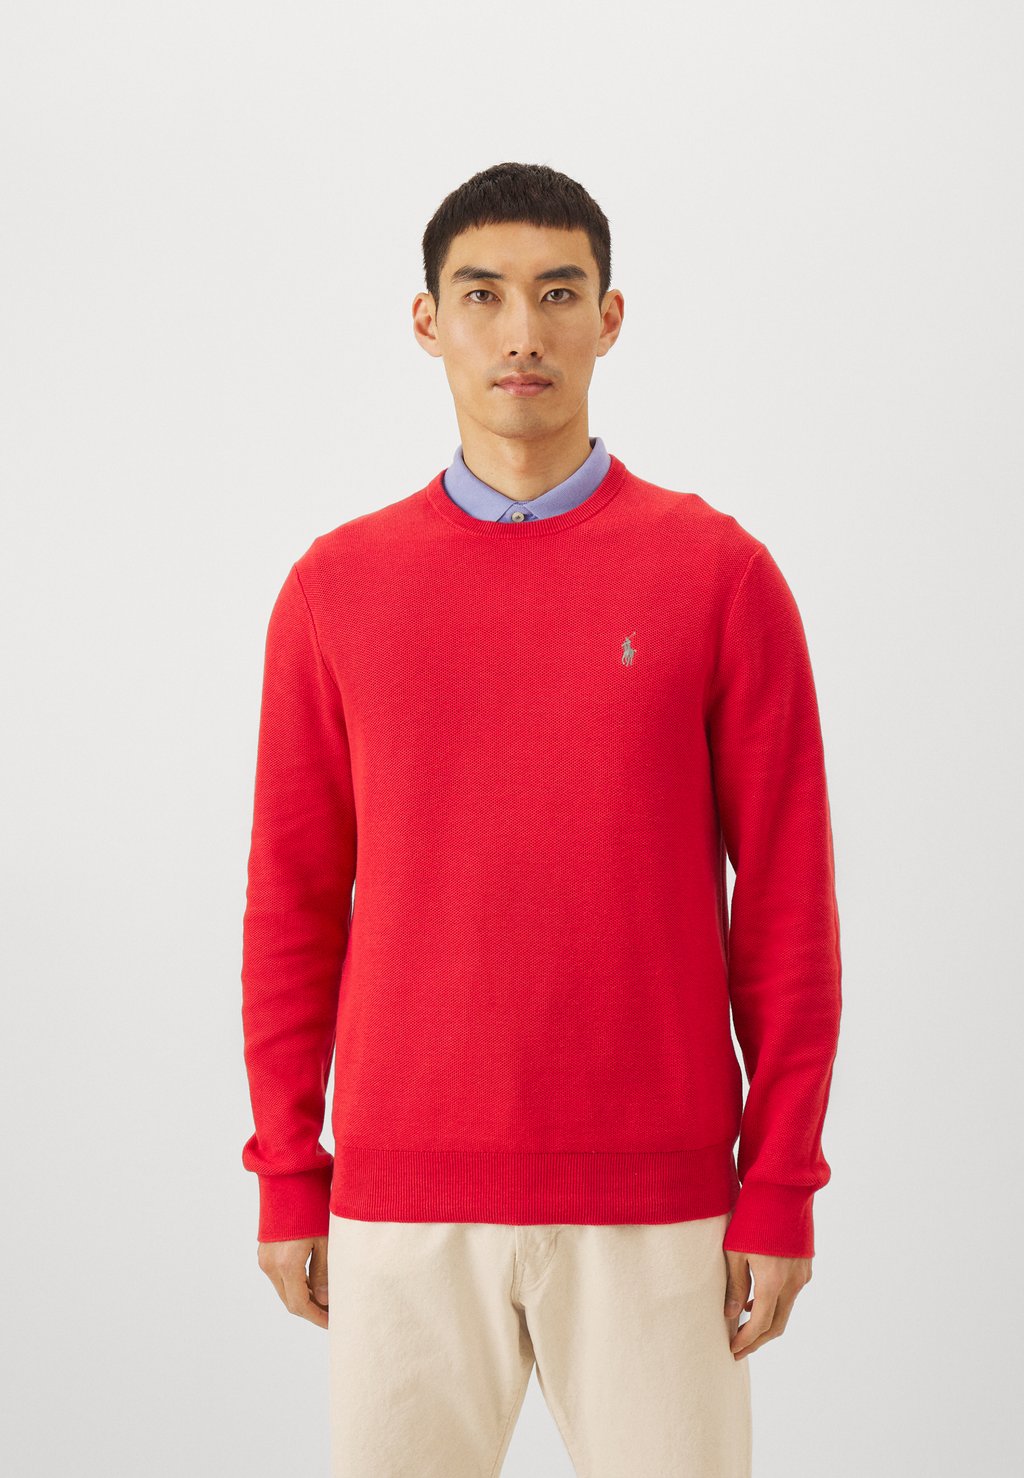 Джемпер ДЛИННЫЙ РУКАВ Polo Ralph Lauren, красный джемпер timezone длинный рукав размер s красный